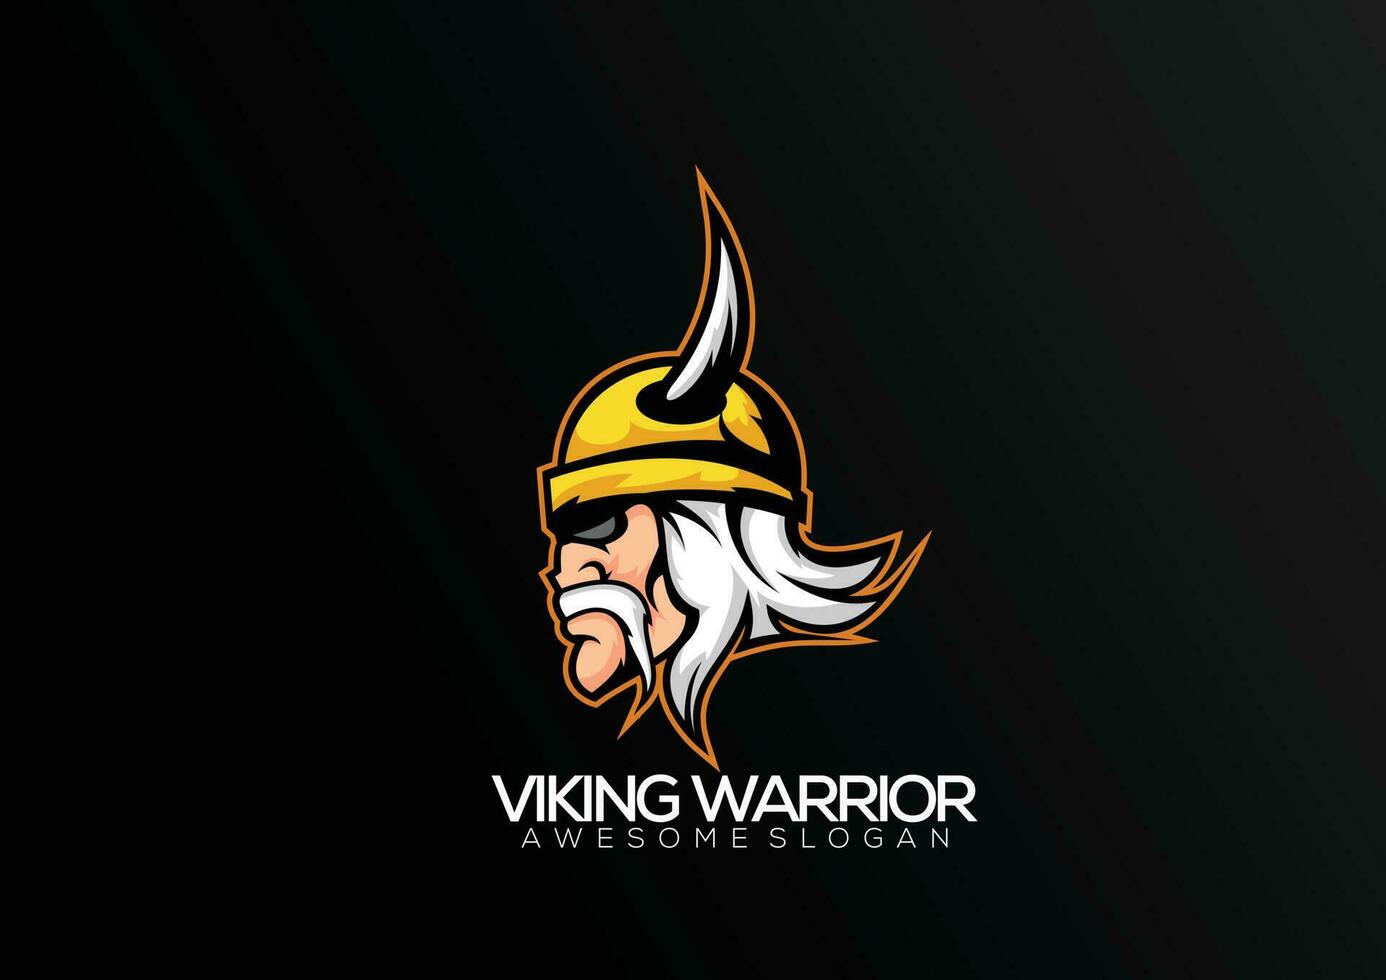 vikingo guerrero logo equipo deporte mascota diseño vector